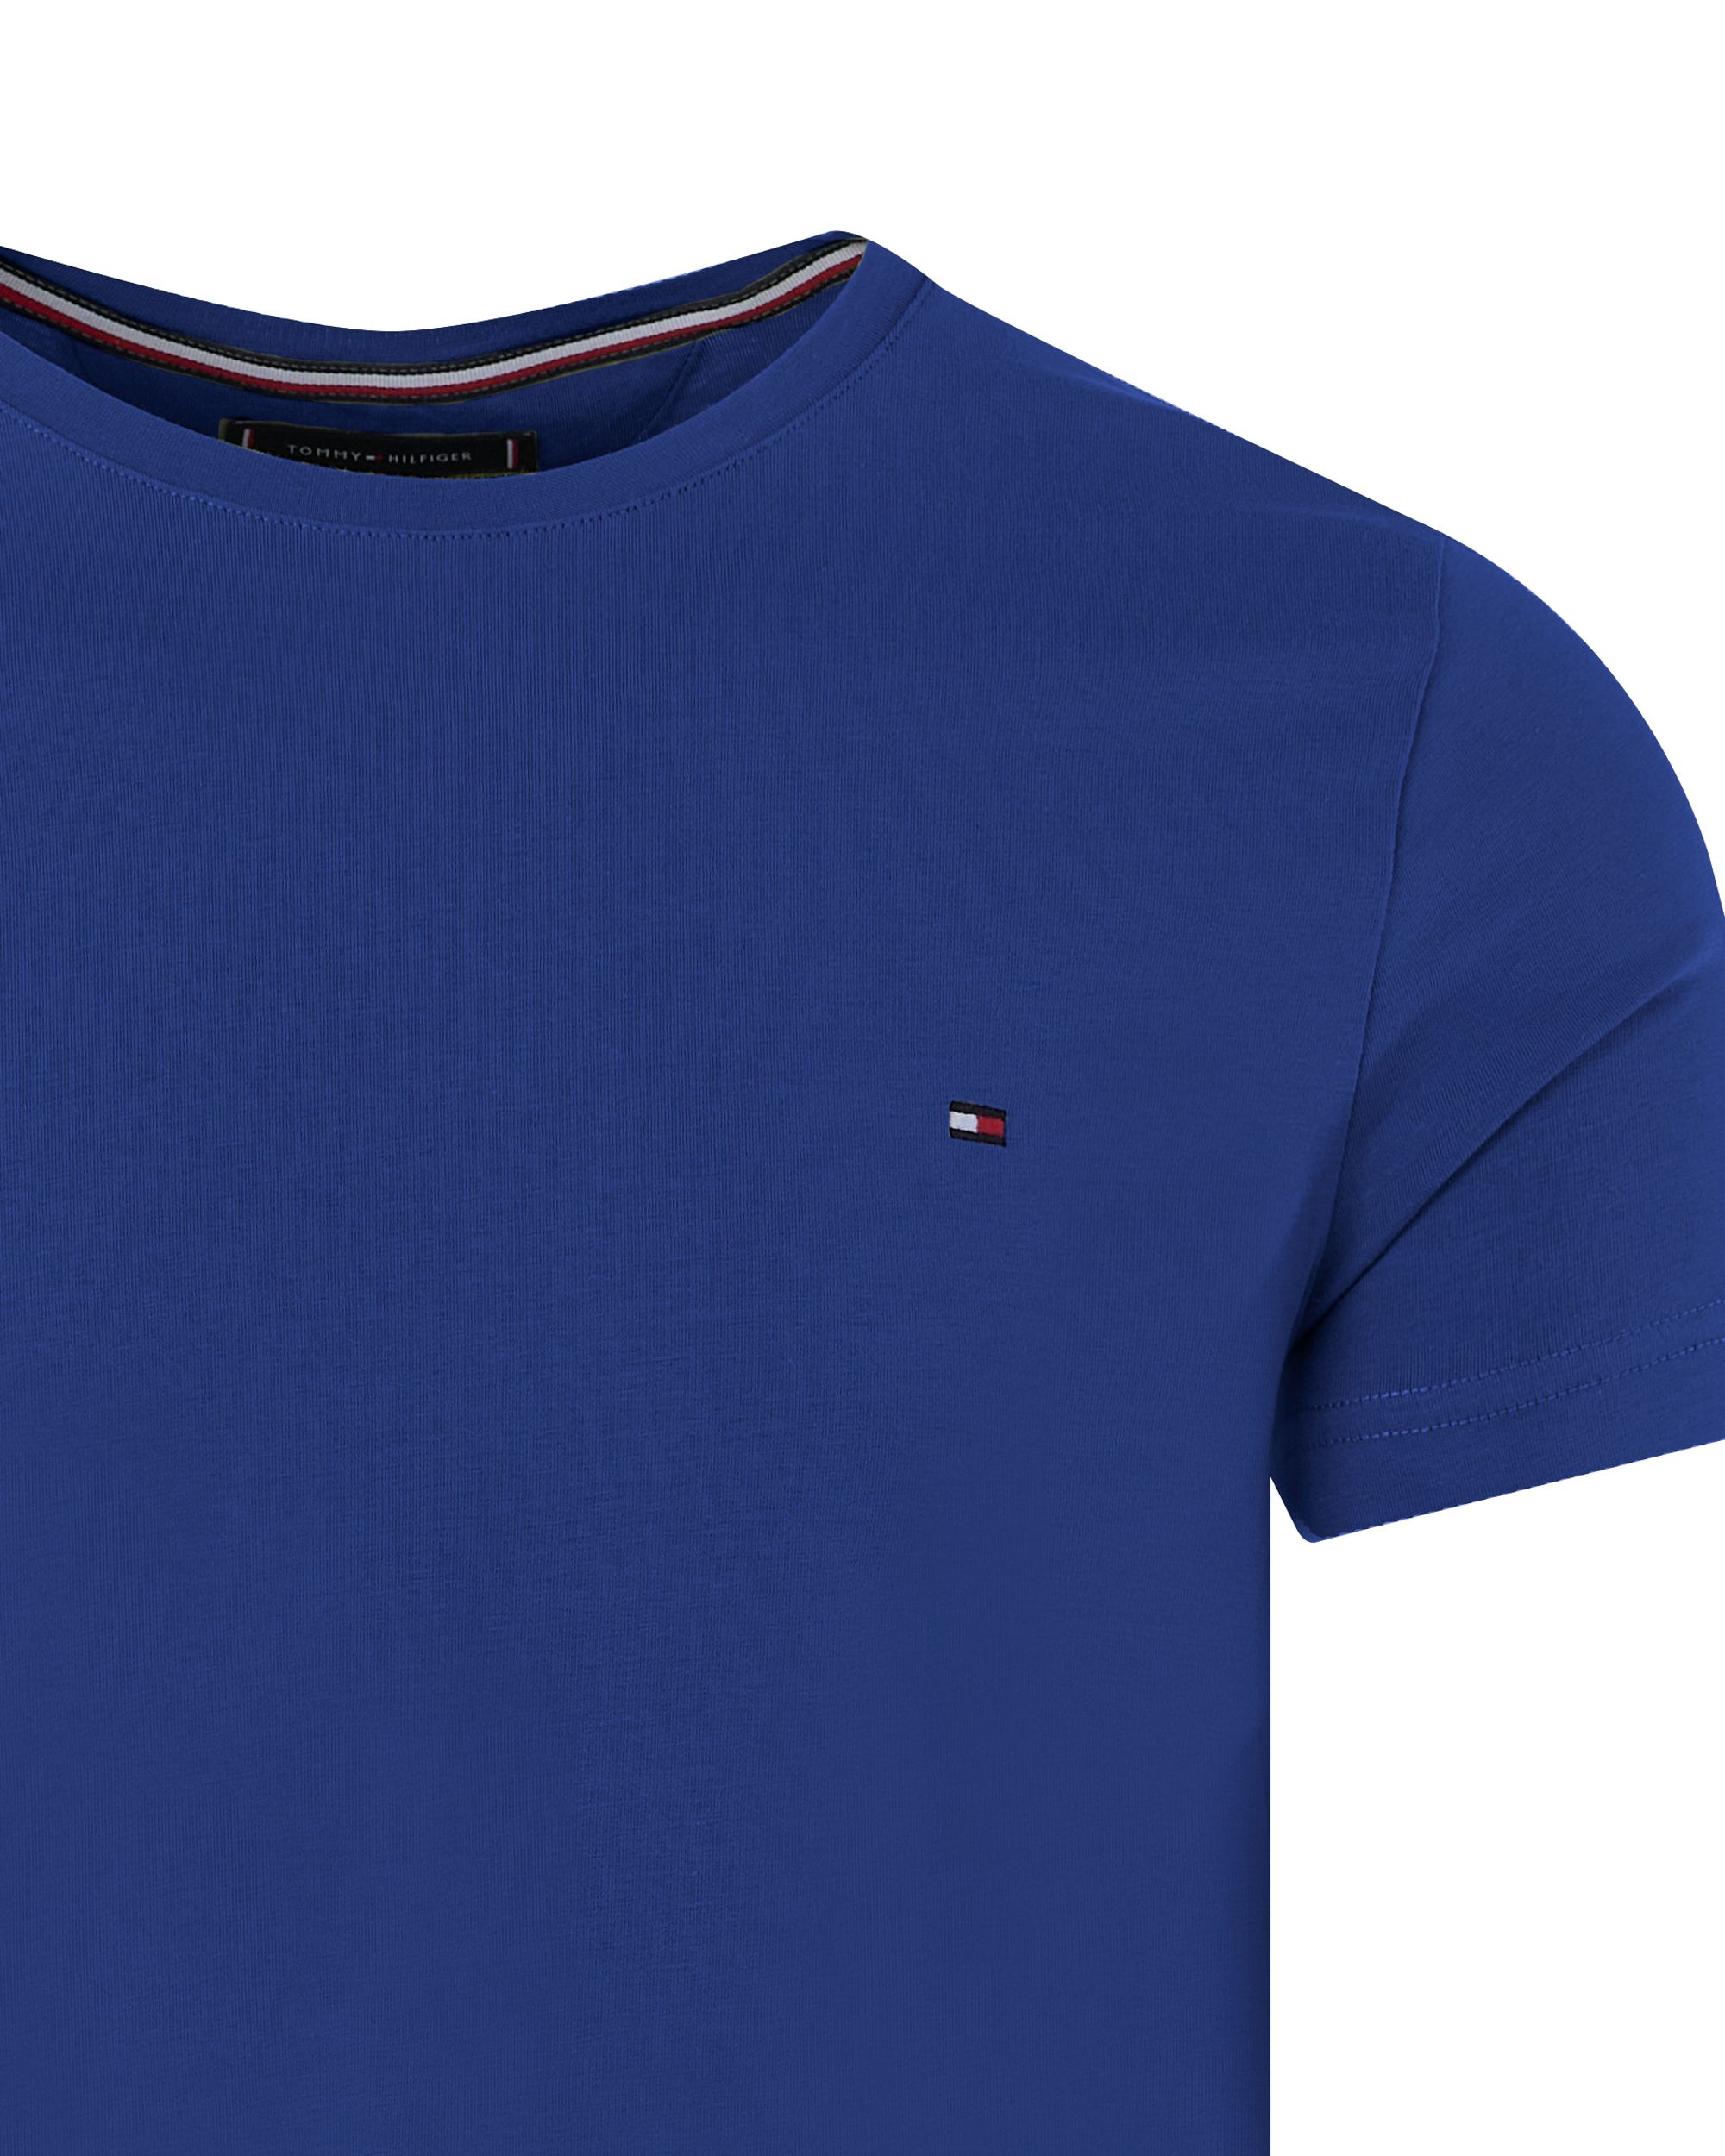 Tommy Hilfiger Menswear T-shirt KM Blauw 094695-001-L